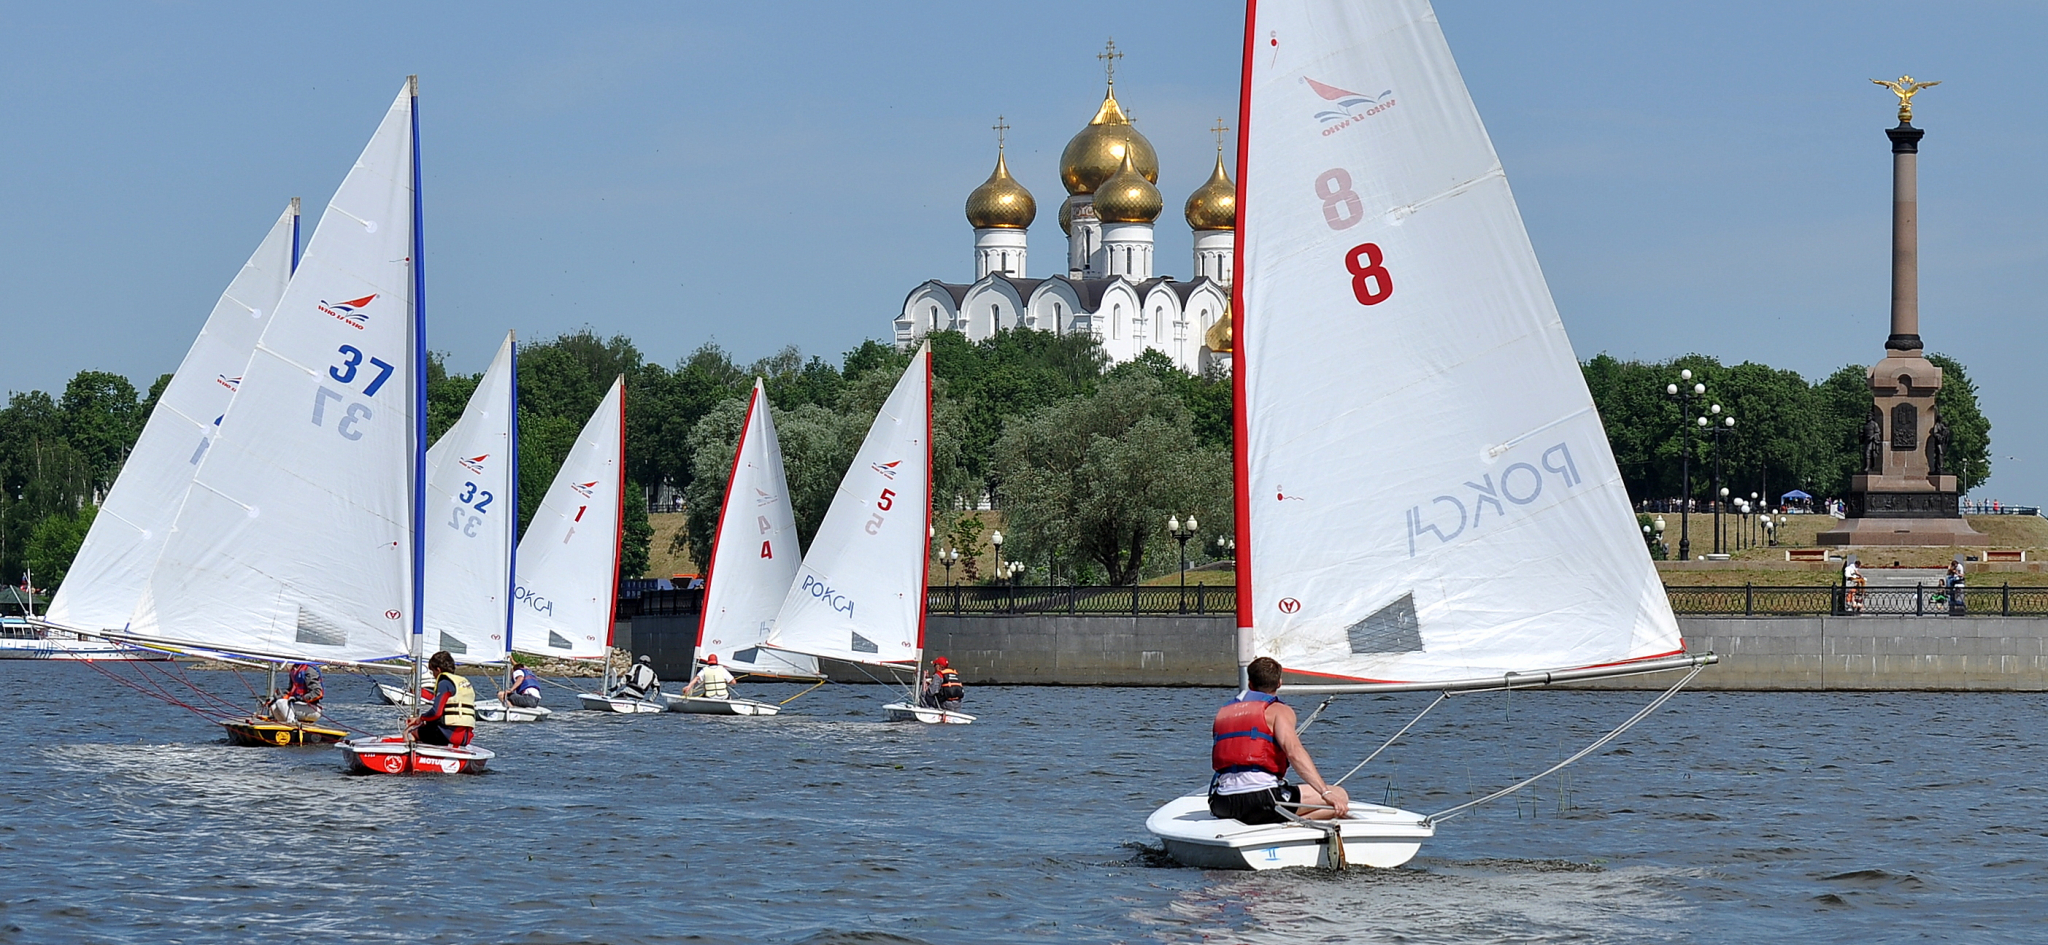 В честь 25-летия ФОРА-БАНКА в Ярославле пройдет парад парусных яхт и парусная регата